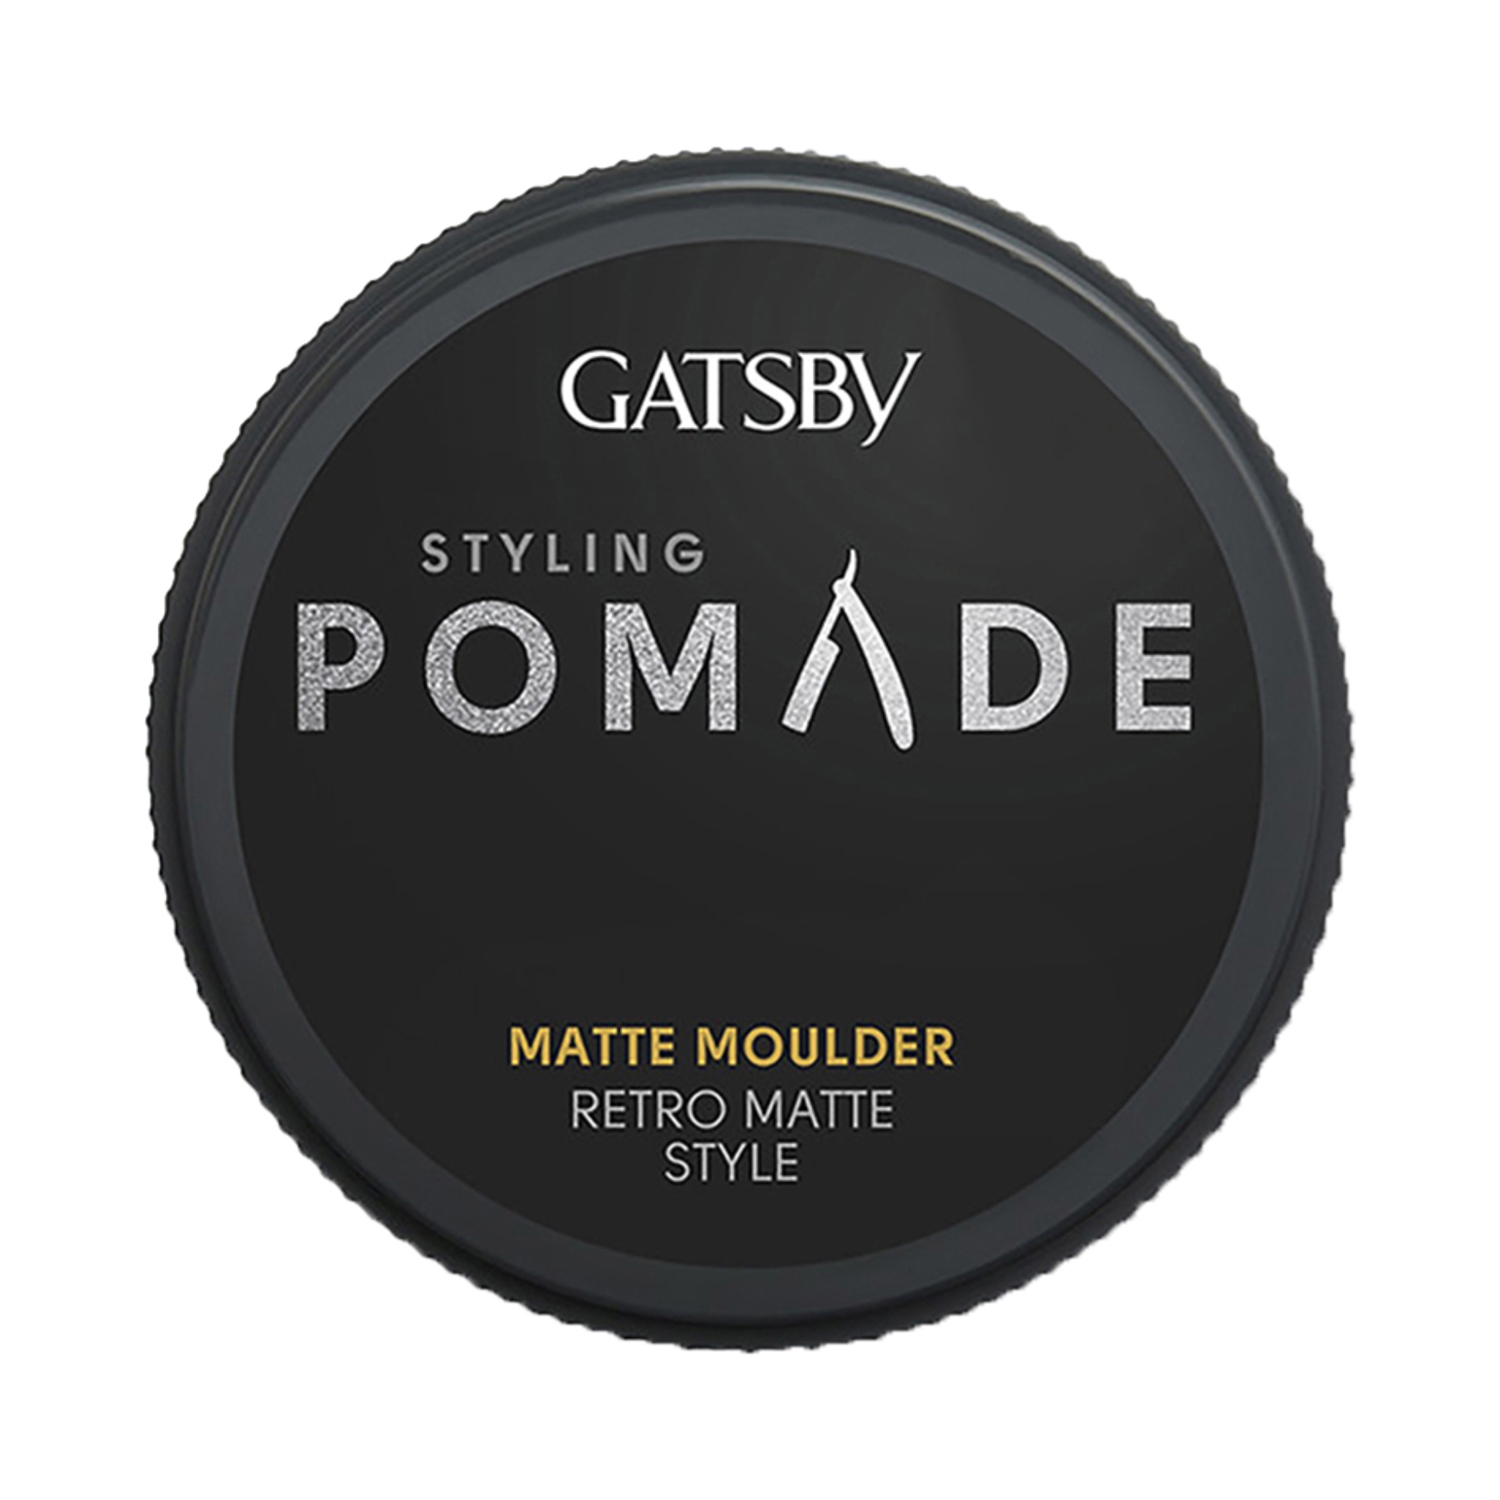 Gatsby | Gatsby Matte Moulder Styling Pomade (75g)